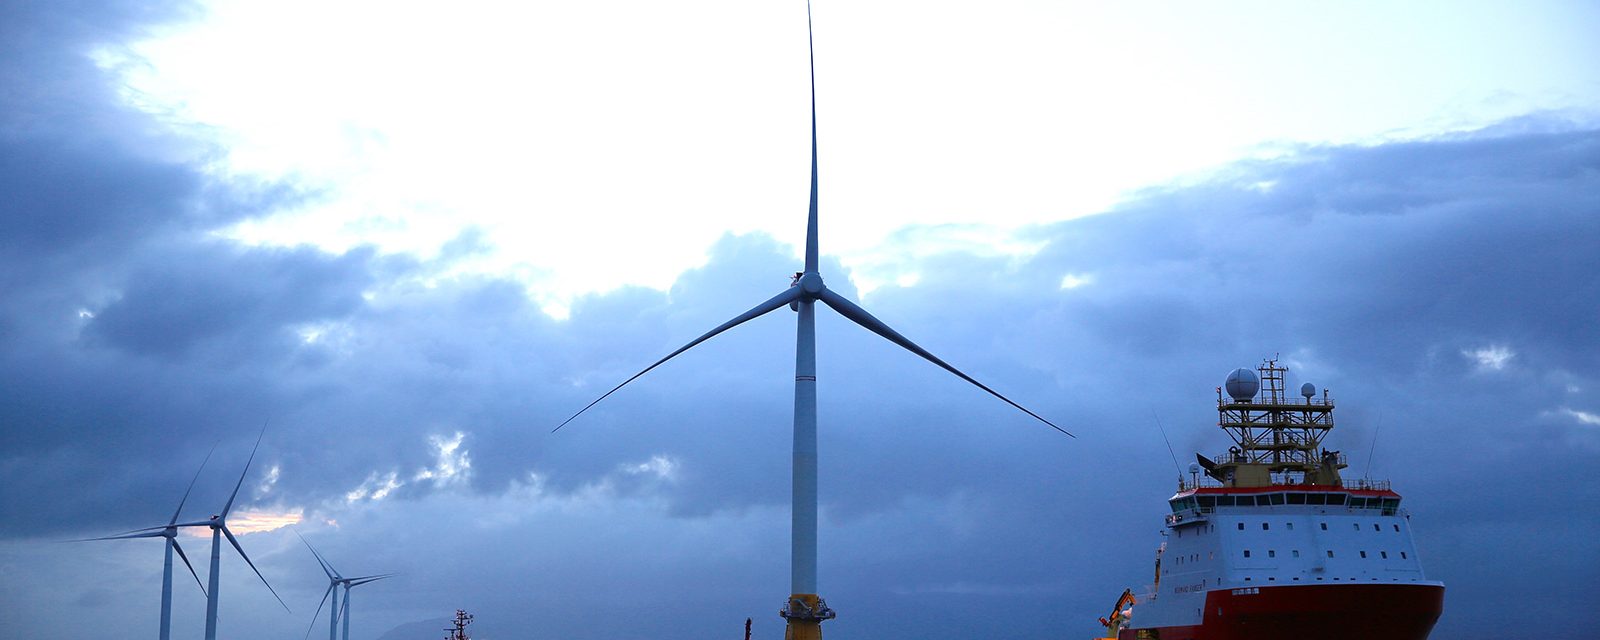 RenewableUK Global Offshore Wind